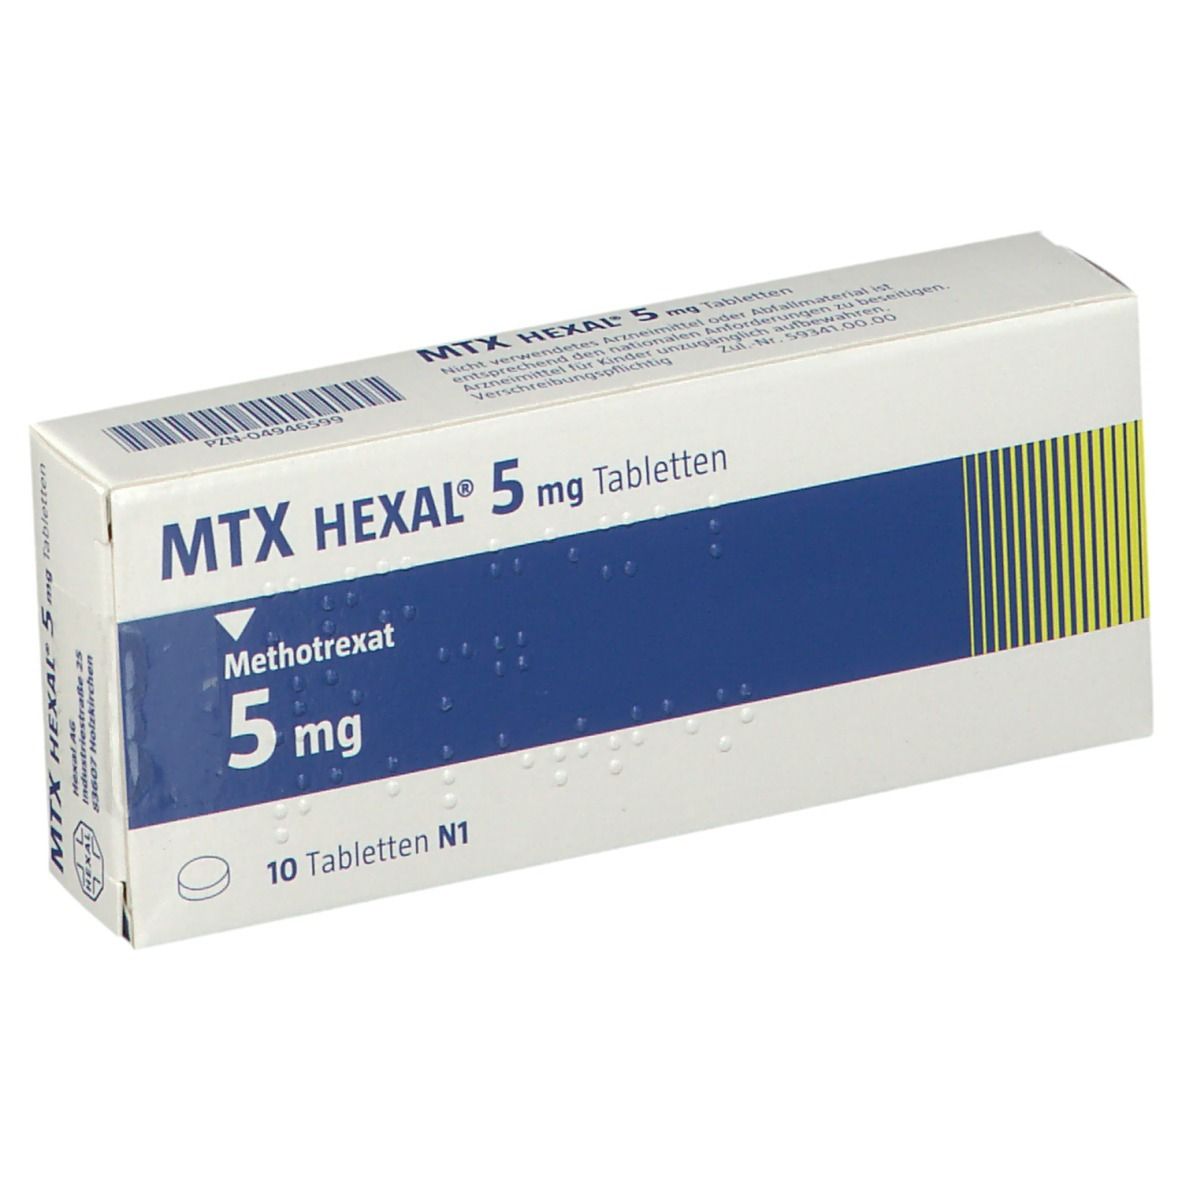 MTX HEXAL® 5 mg